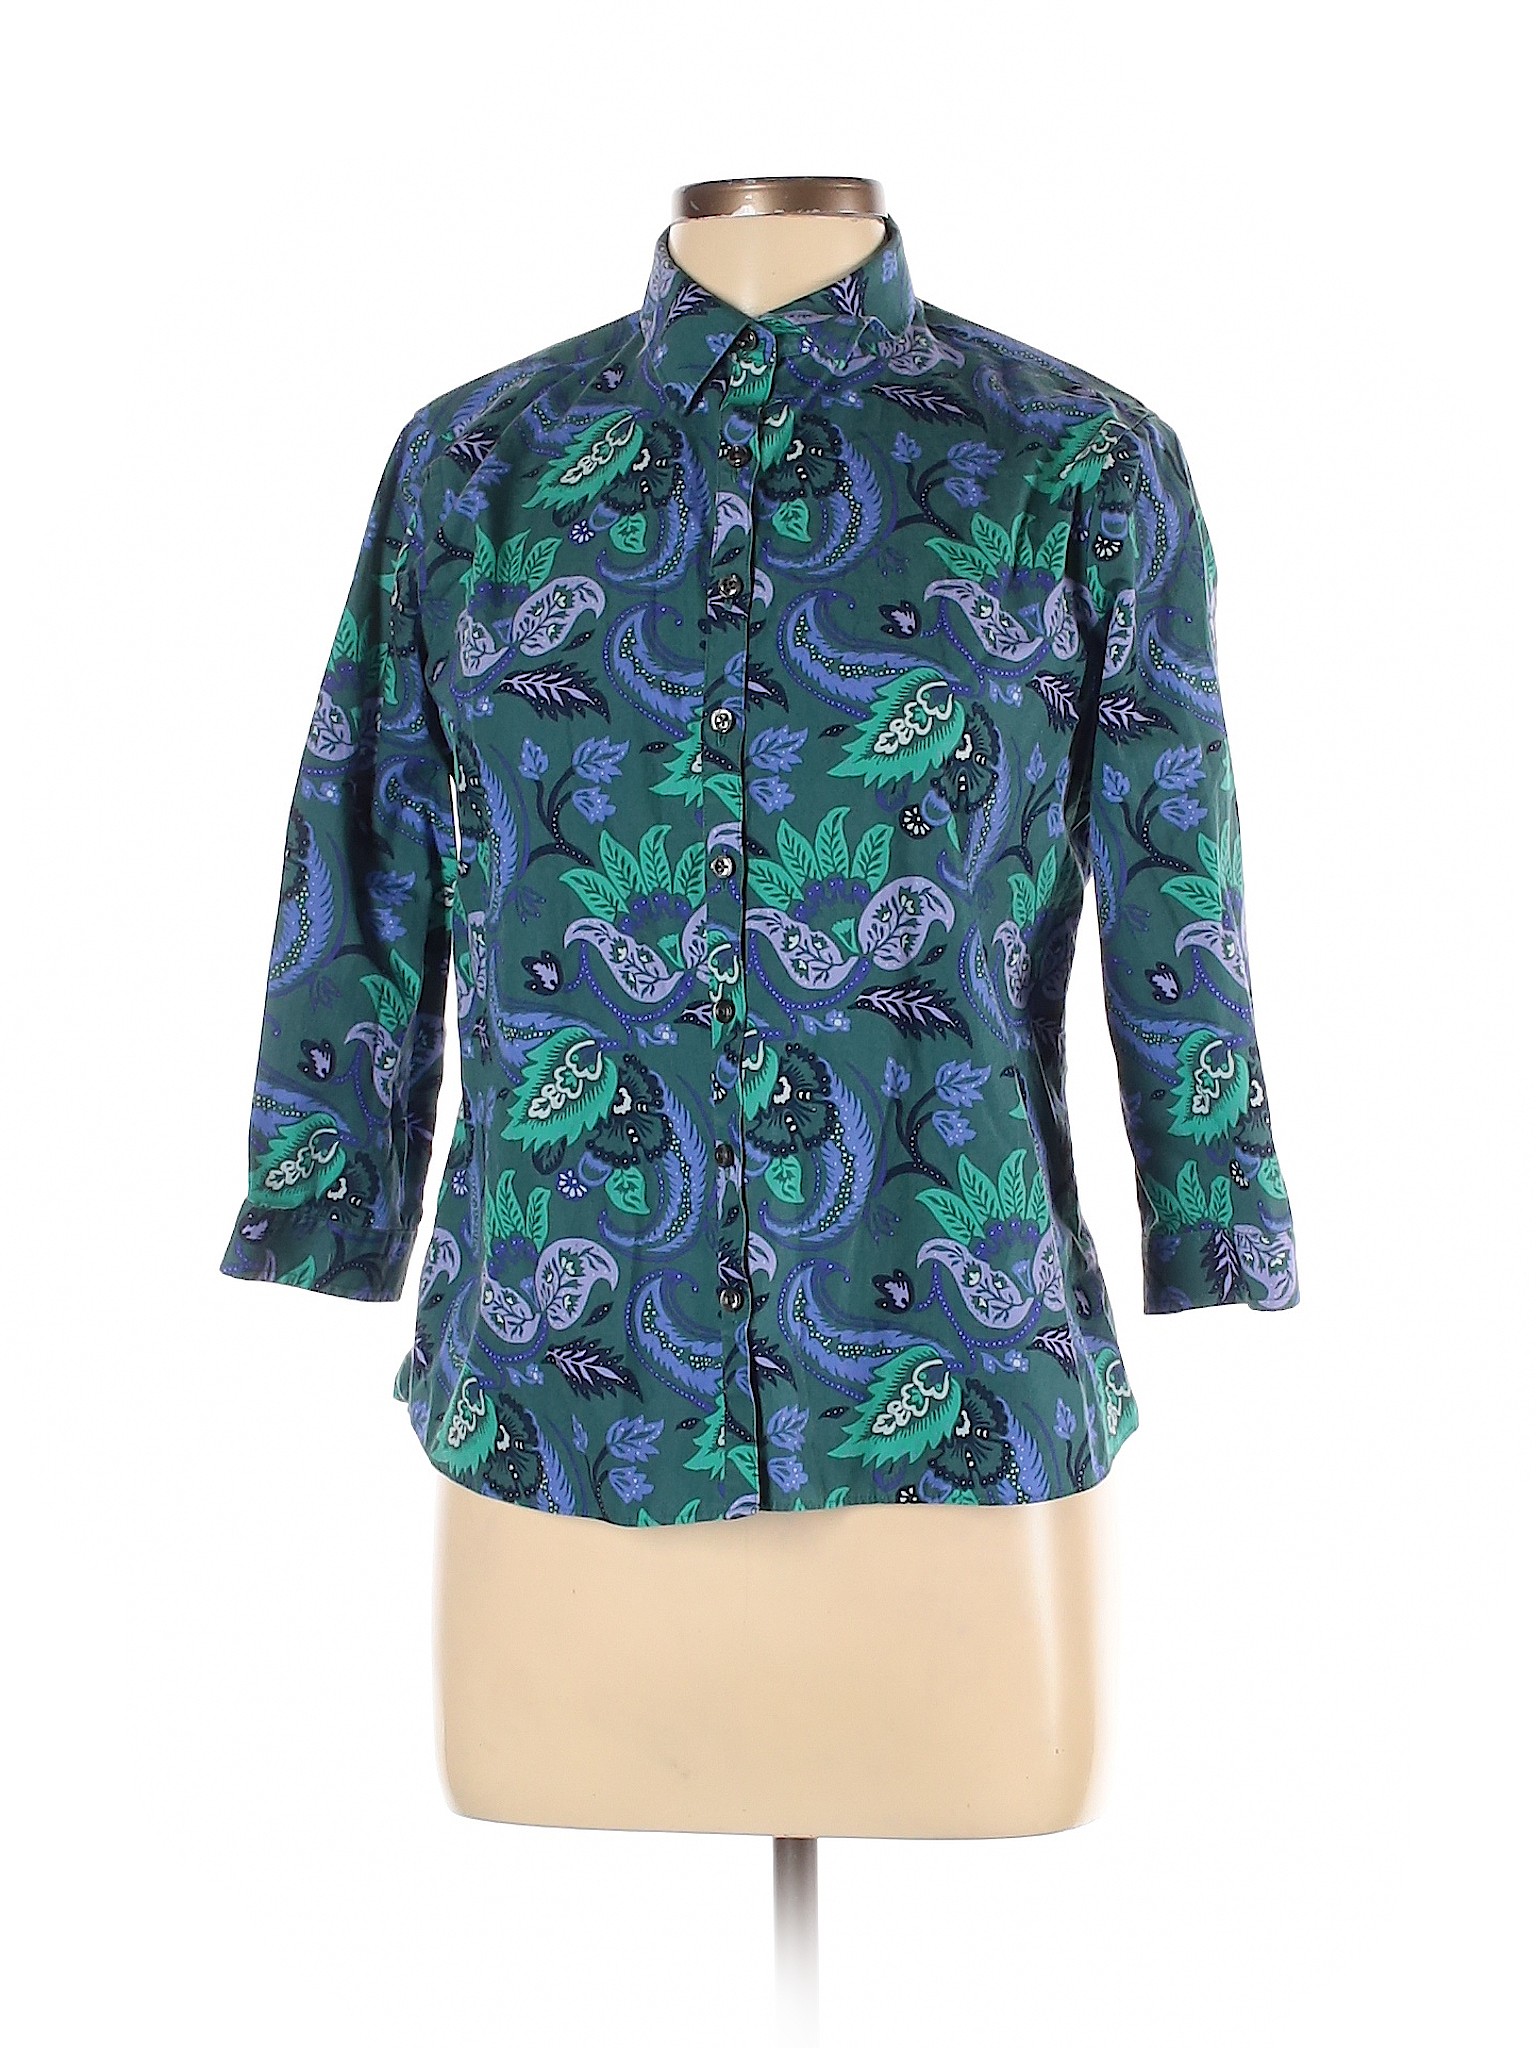 Lands' End Women Blue 3/4 Sleeve Button-Down Shirt 10 Petites | eBay